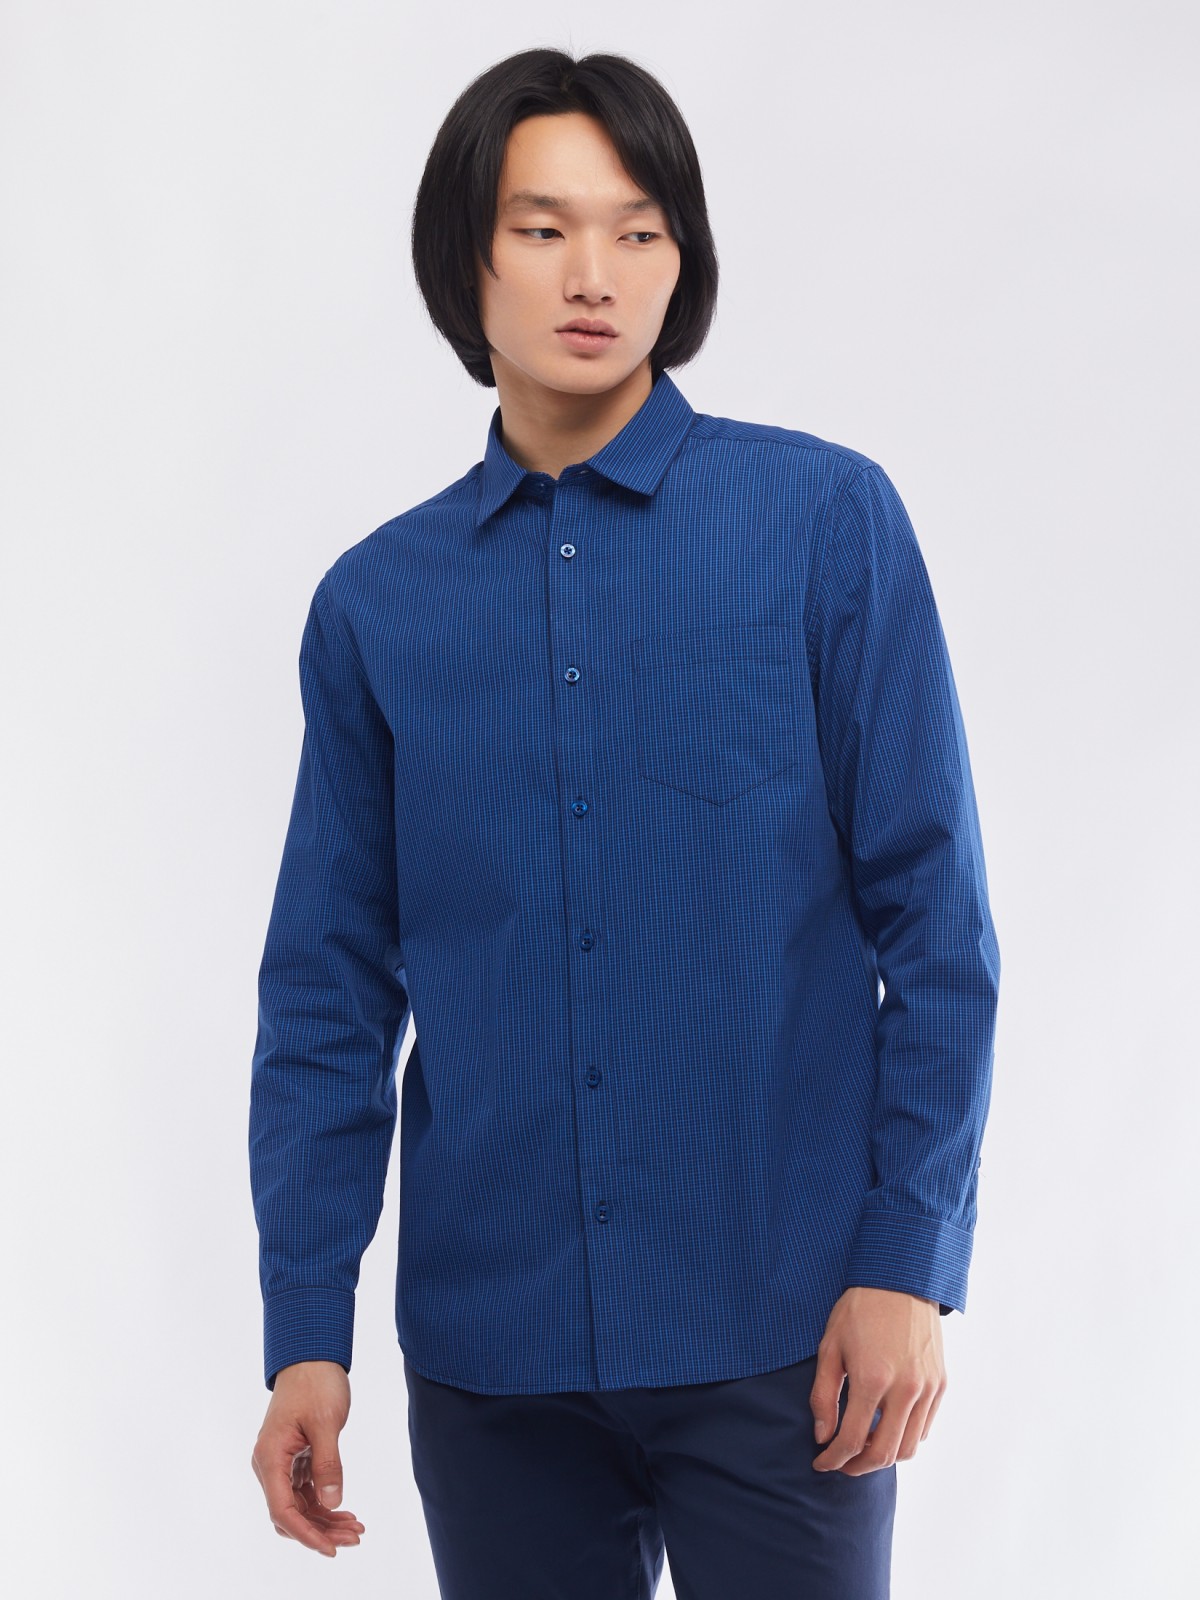 Офисная рубашка прямого силуэта с узором в клетку zolla 014112159062, цвет голубой, размер M - фото 5